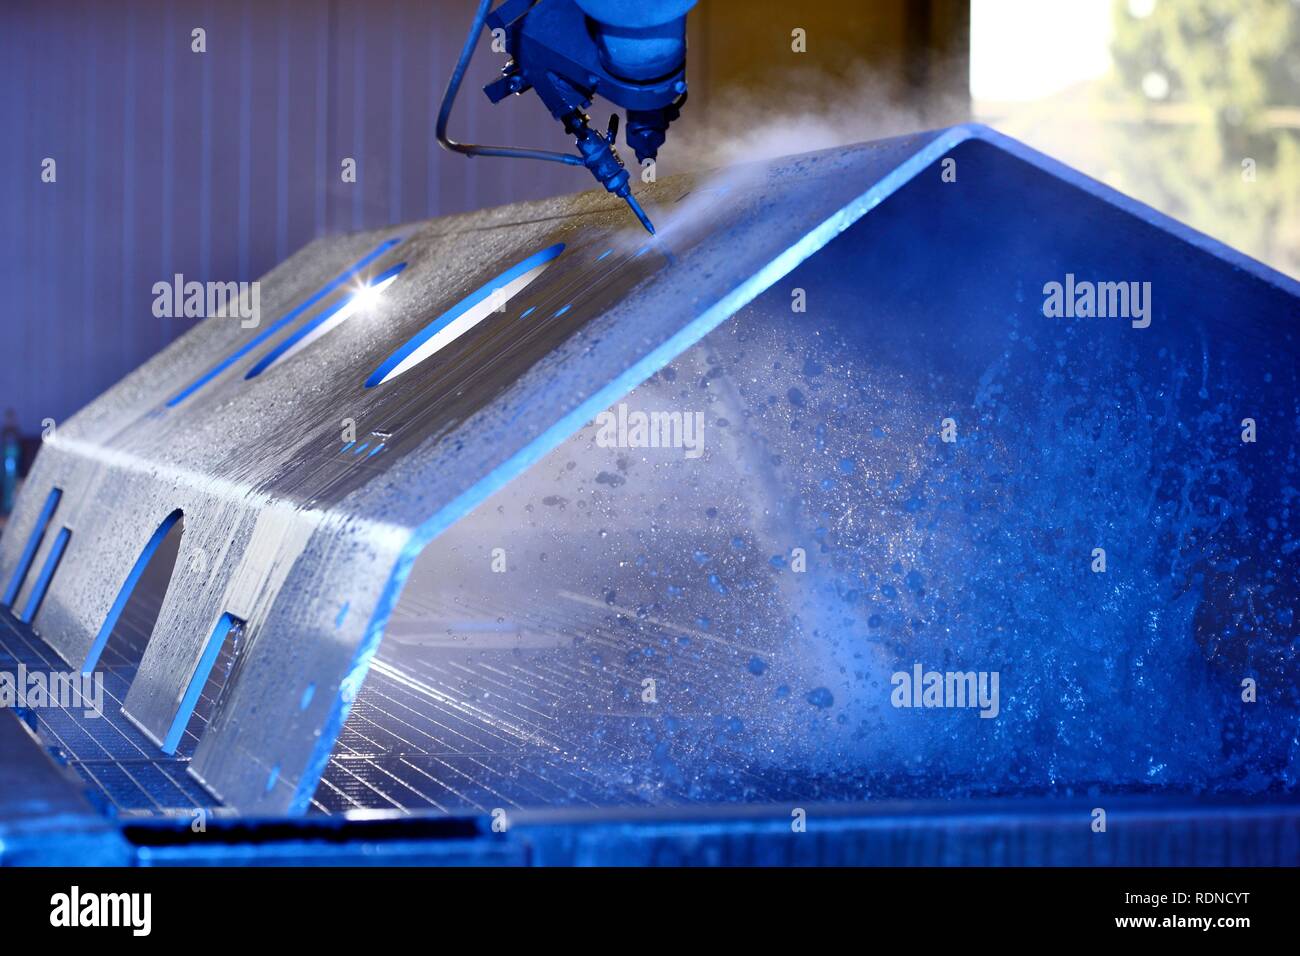 Wasserstrahltechnik, präzise Technologie für das Schneiden von Metall mit einem Hochdruck-wasserstrahl, wo einem scheuernden Material hinzugefügt wird Stockfoto